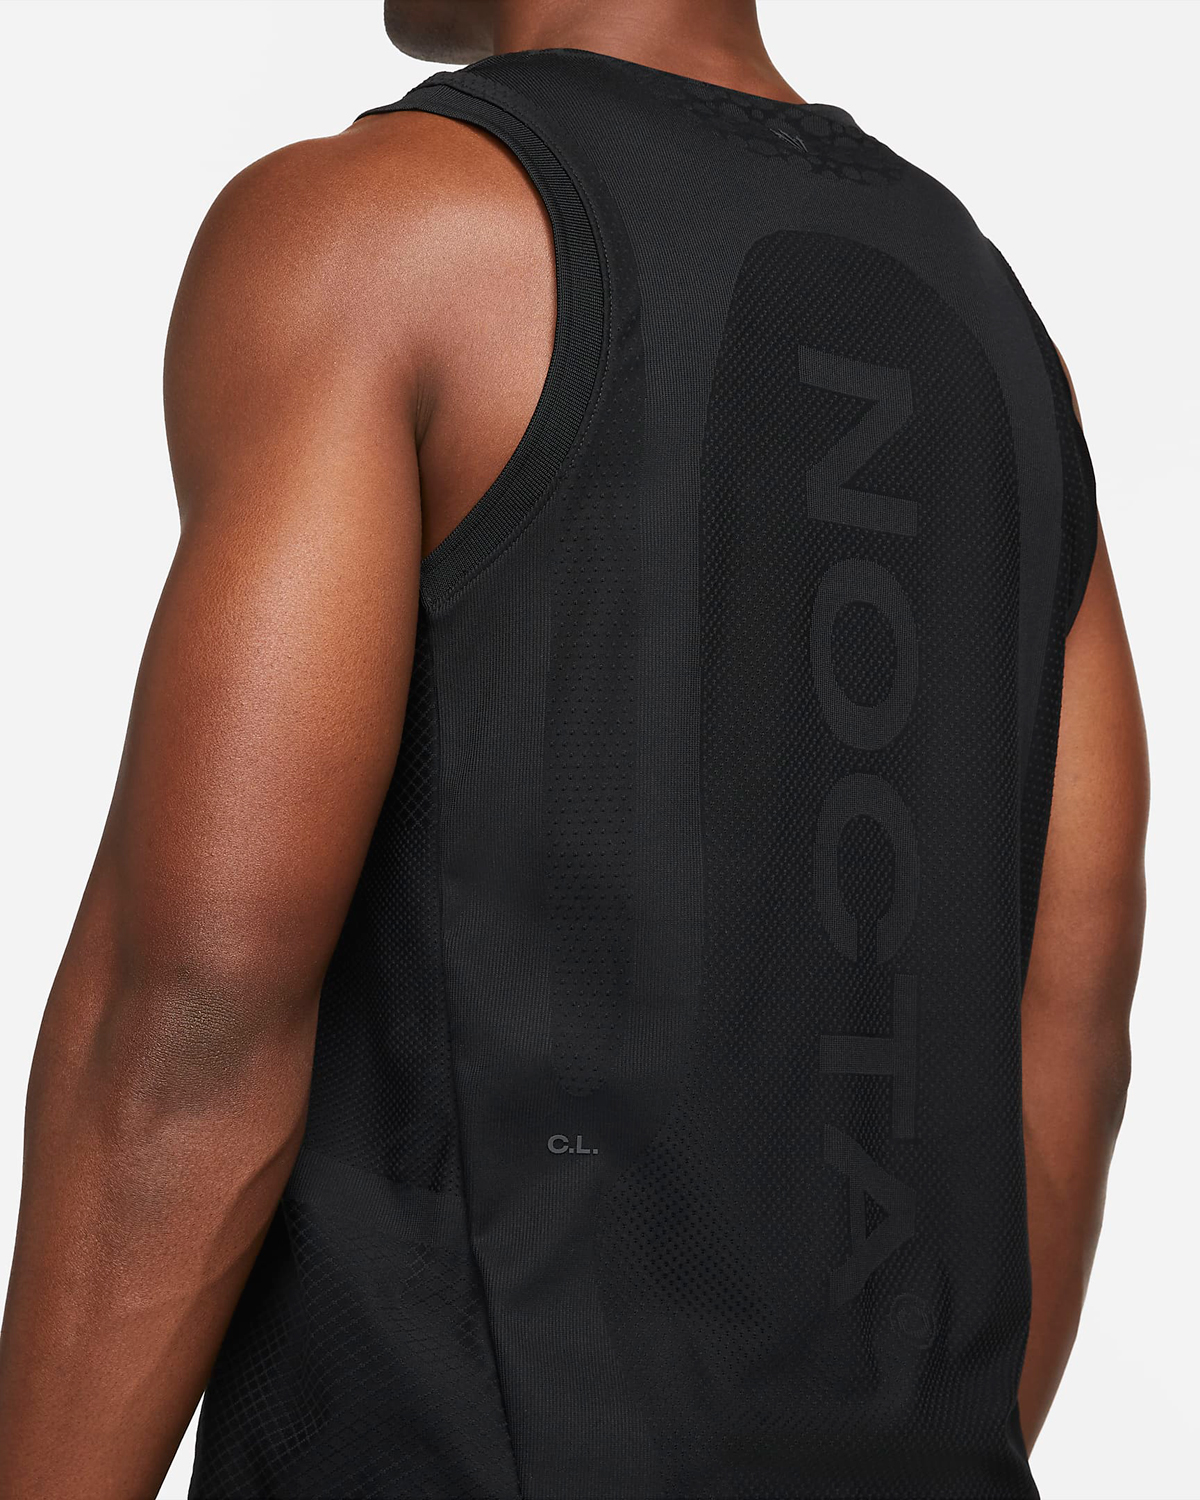 Drake-NOCTA-Nike-Basketball-Jersey-Black-2